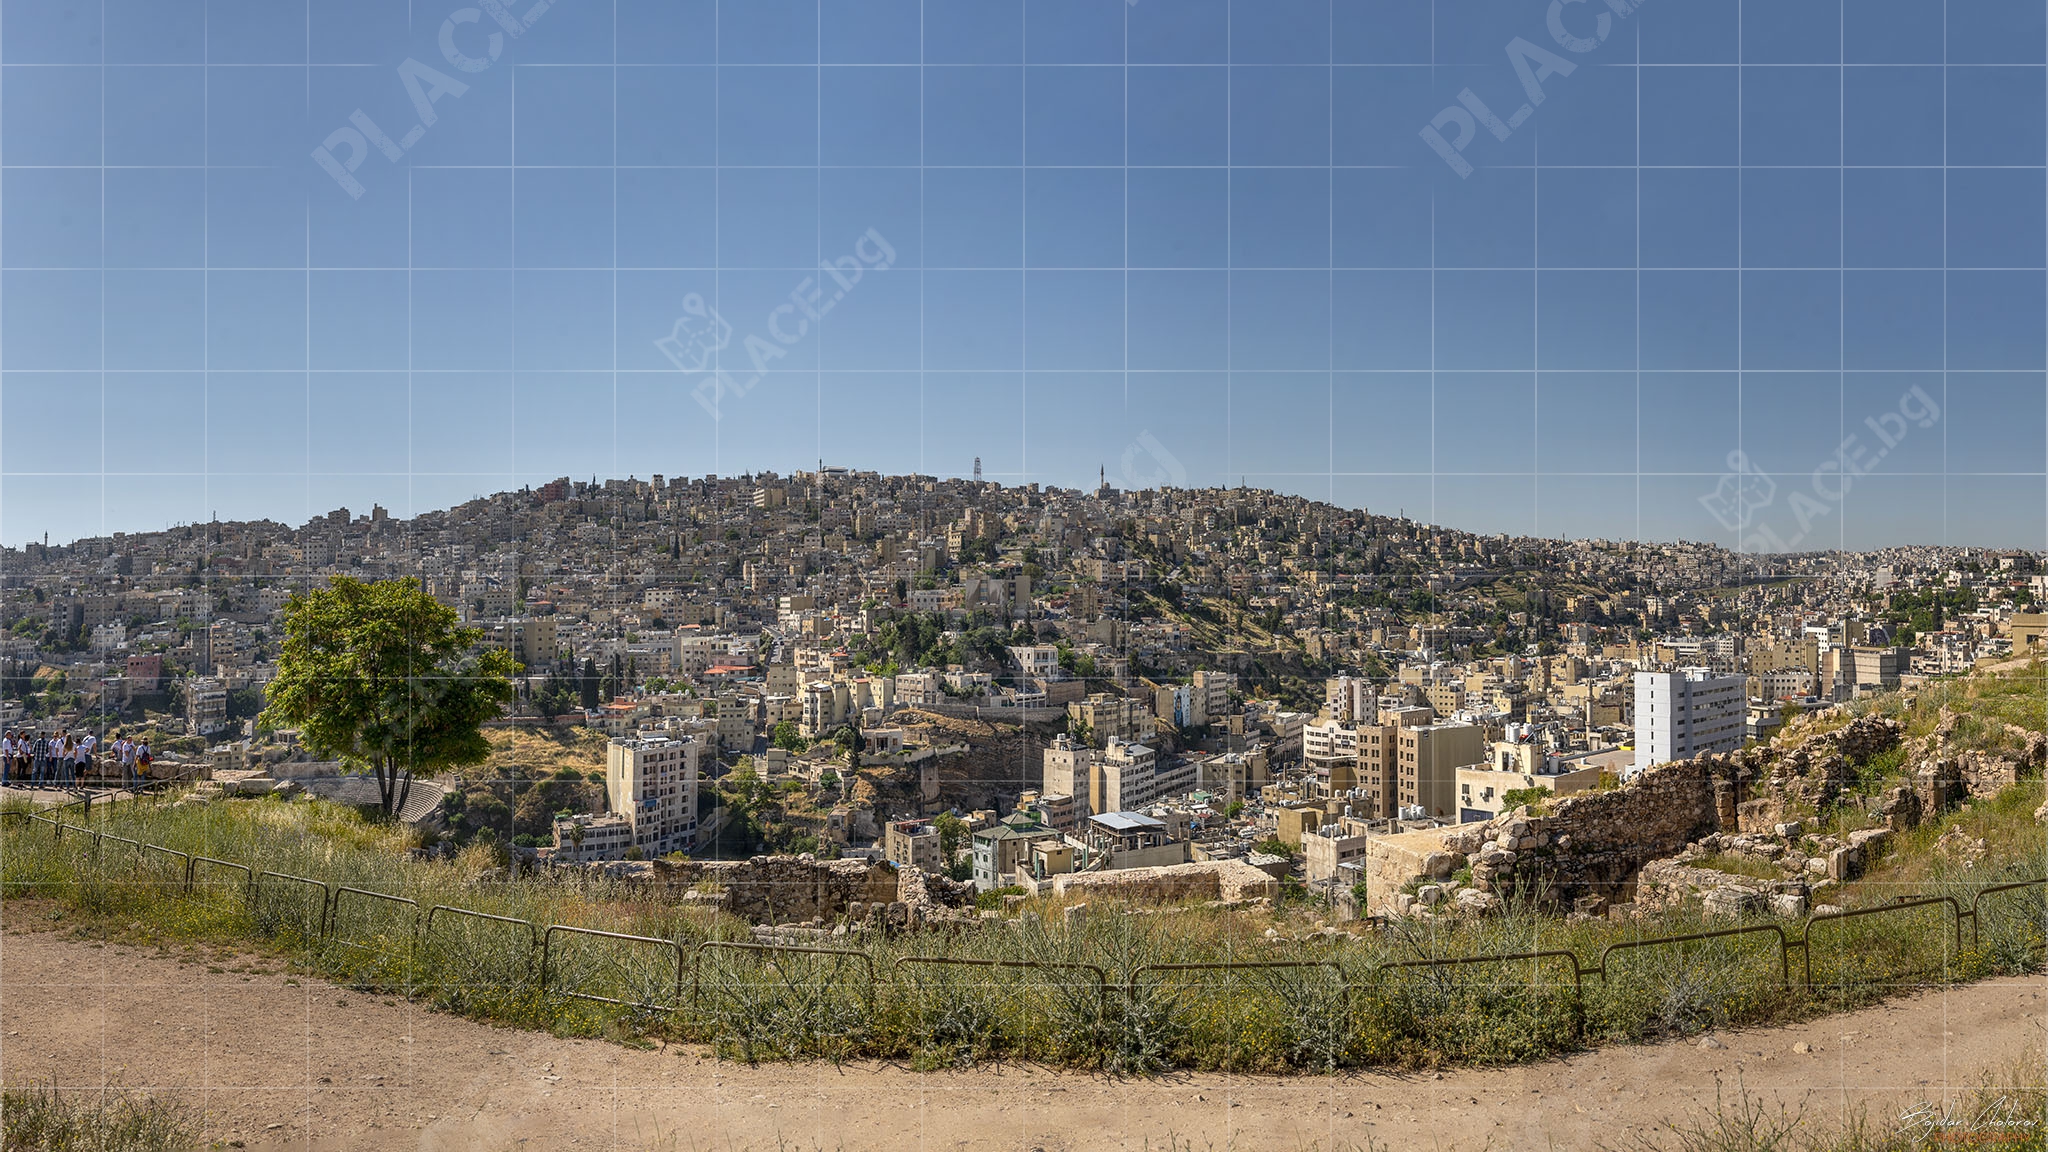 Amman_Citadel_Panorama1